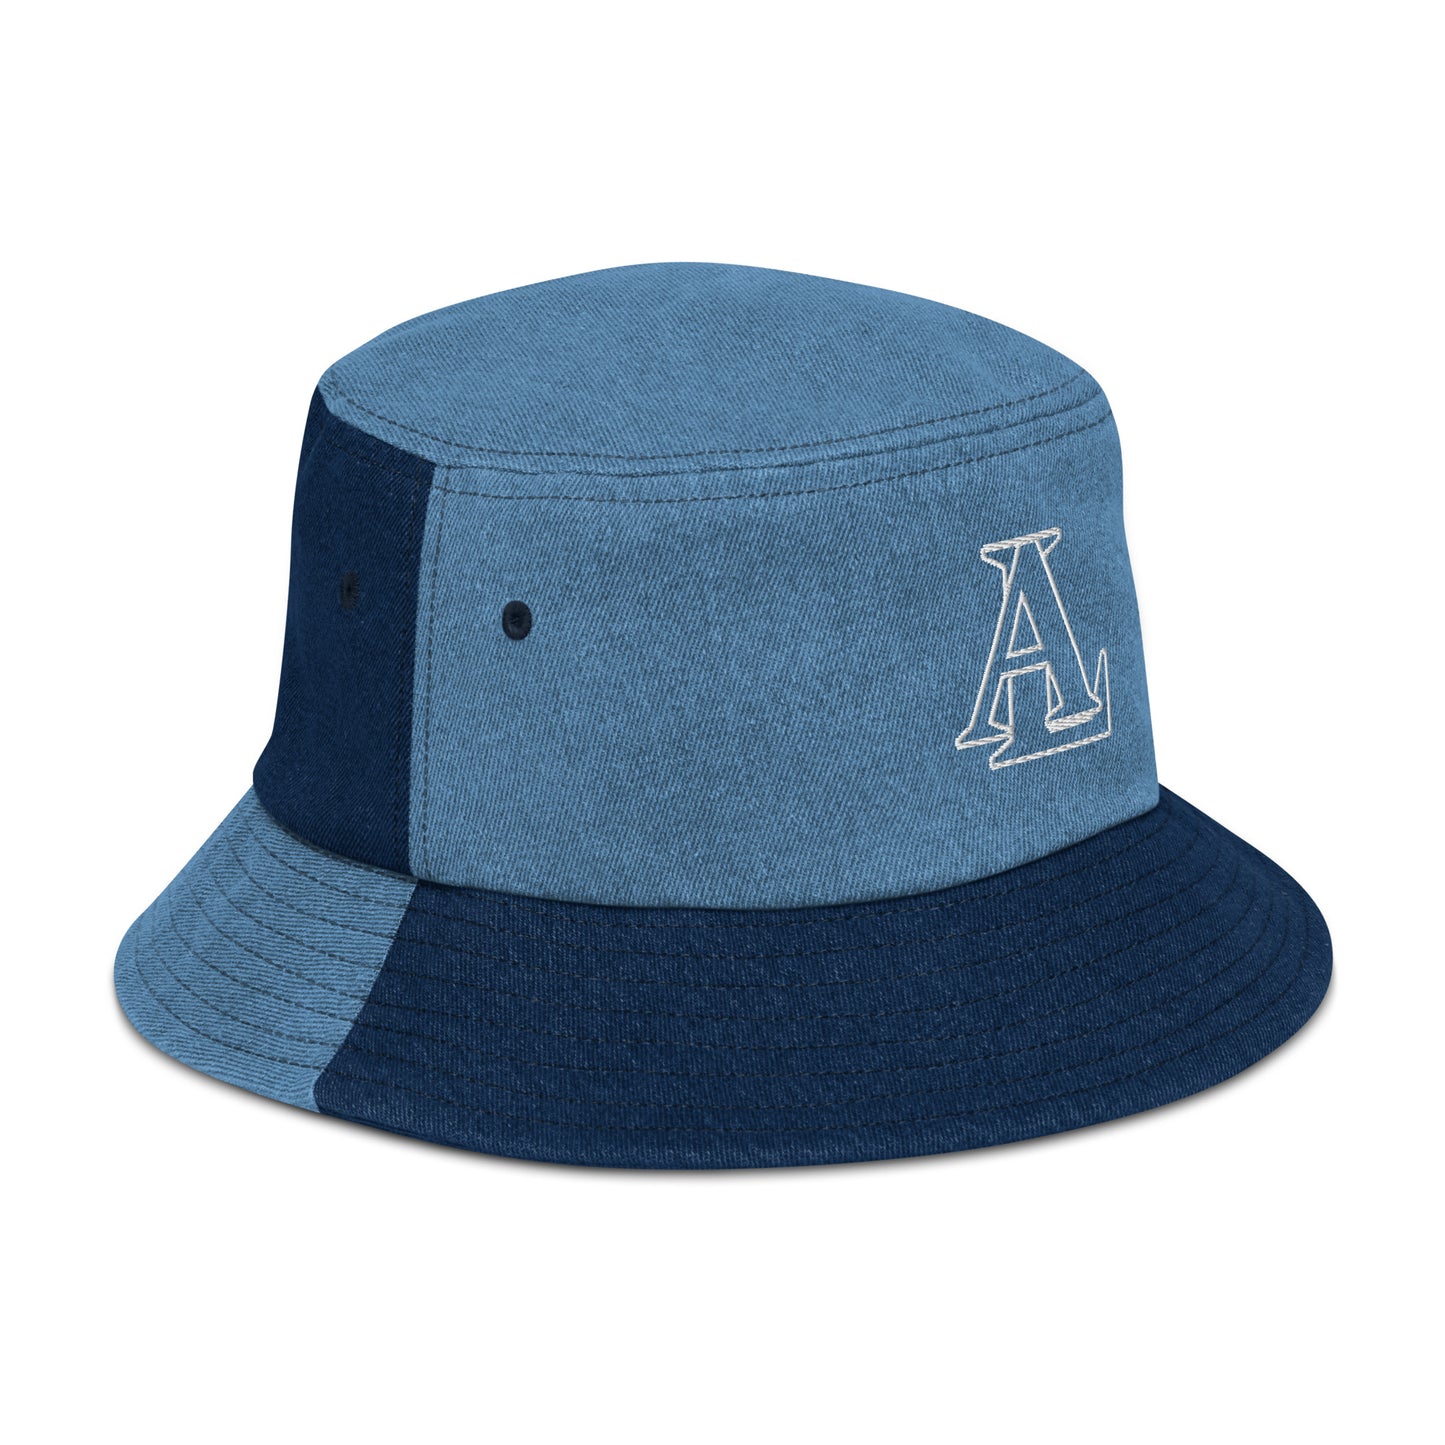 Amir LaVie - Denim bucket hat